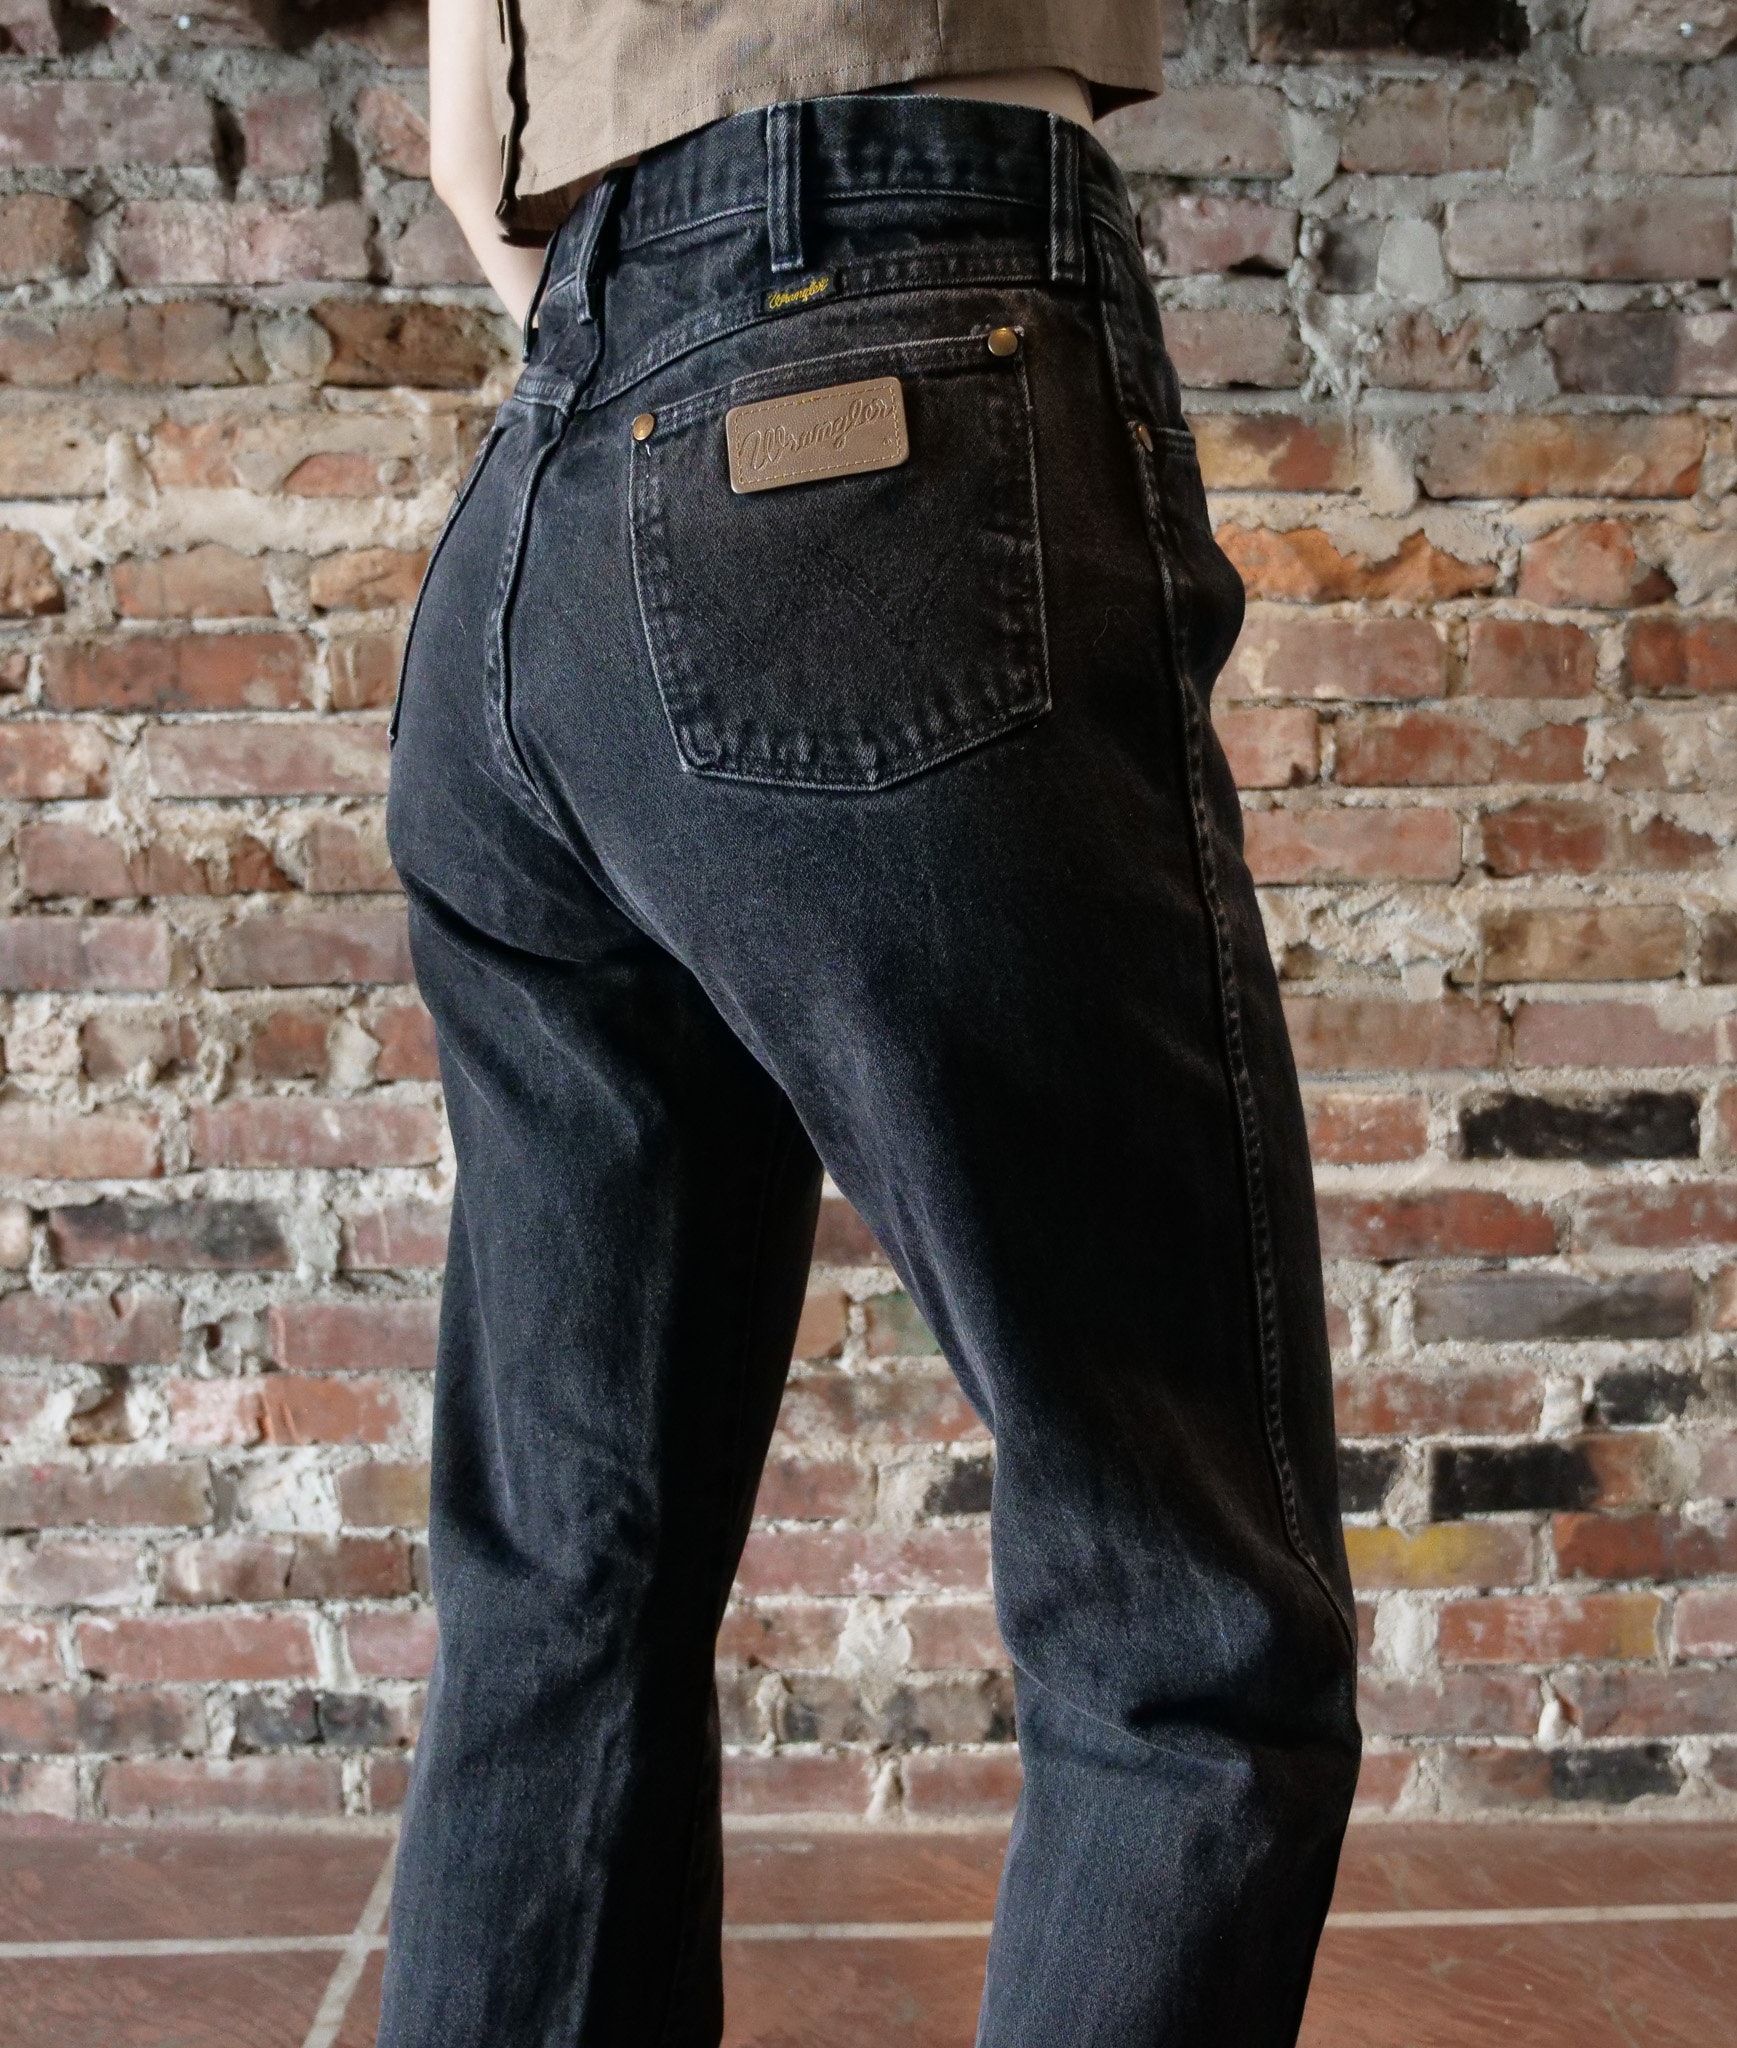 Black Wrangler Jeans -  Canada